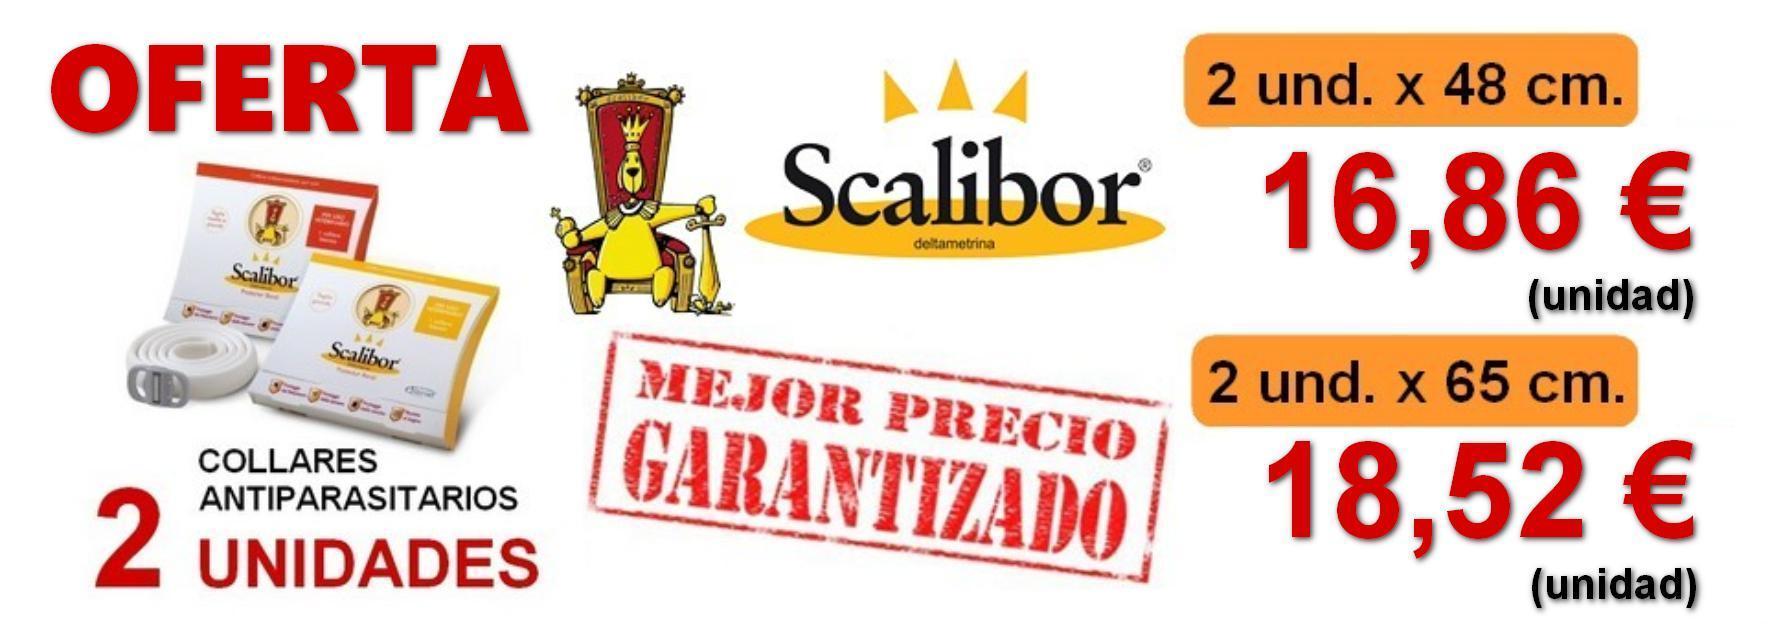 Collar Antiparasitario Scalibor 48 y 65 cm.